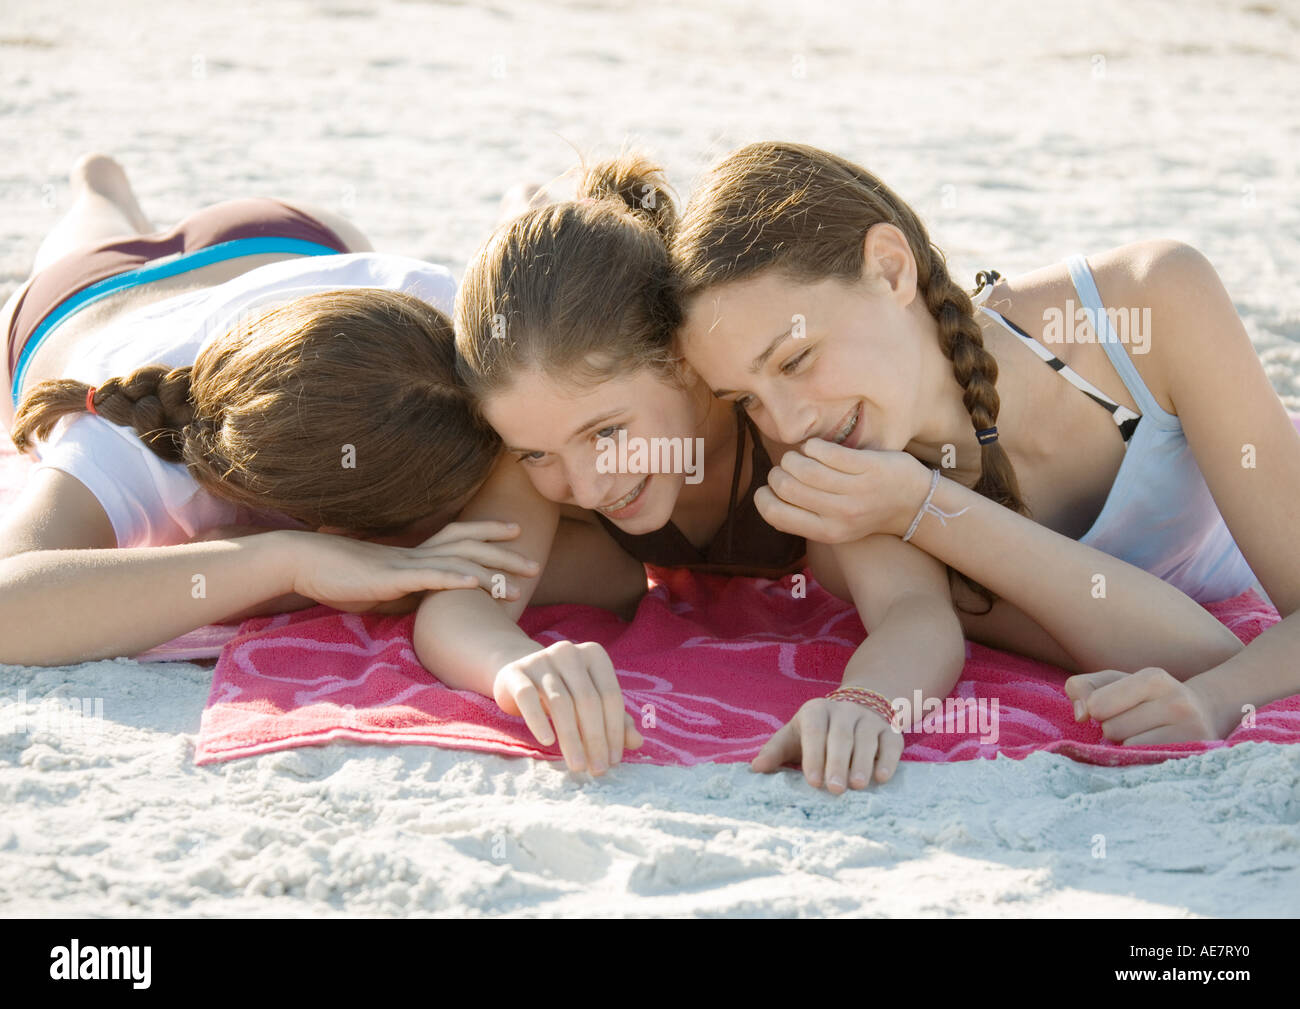 Drei Preteen Mädchen Am Strand Liegen Und Kichern Stockfotografie Alamy 